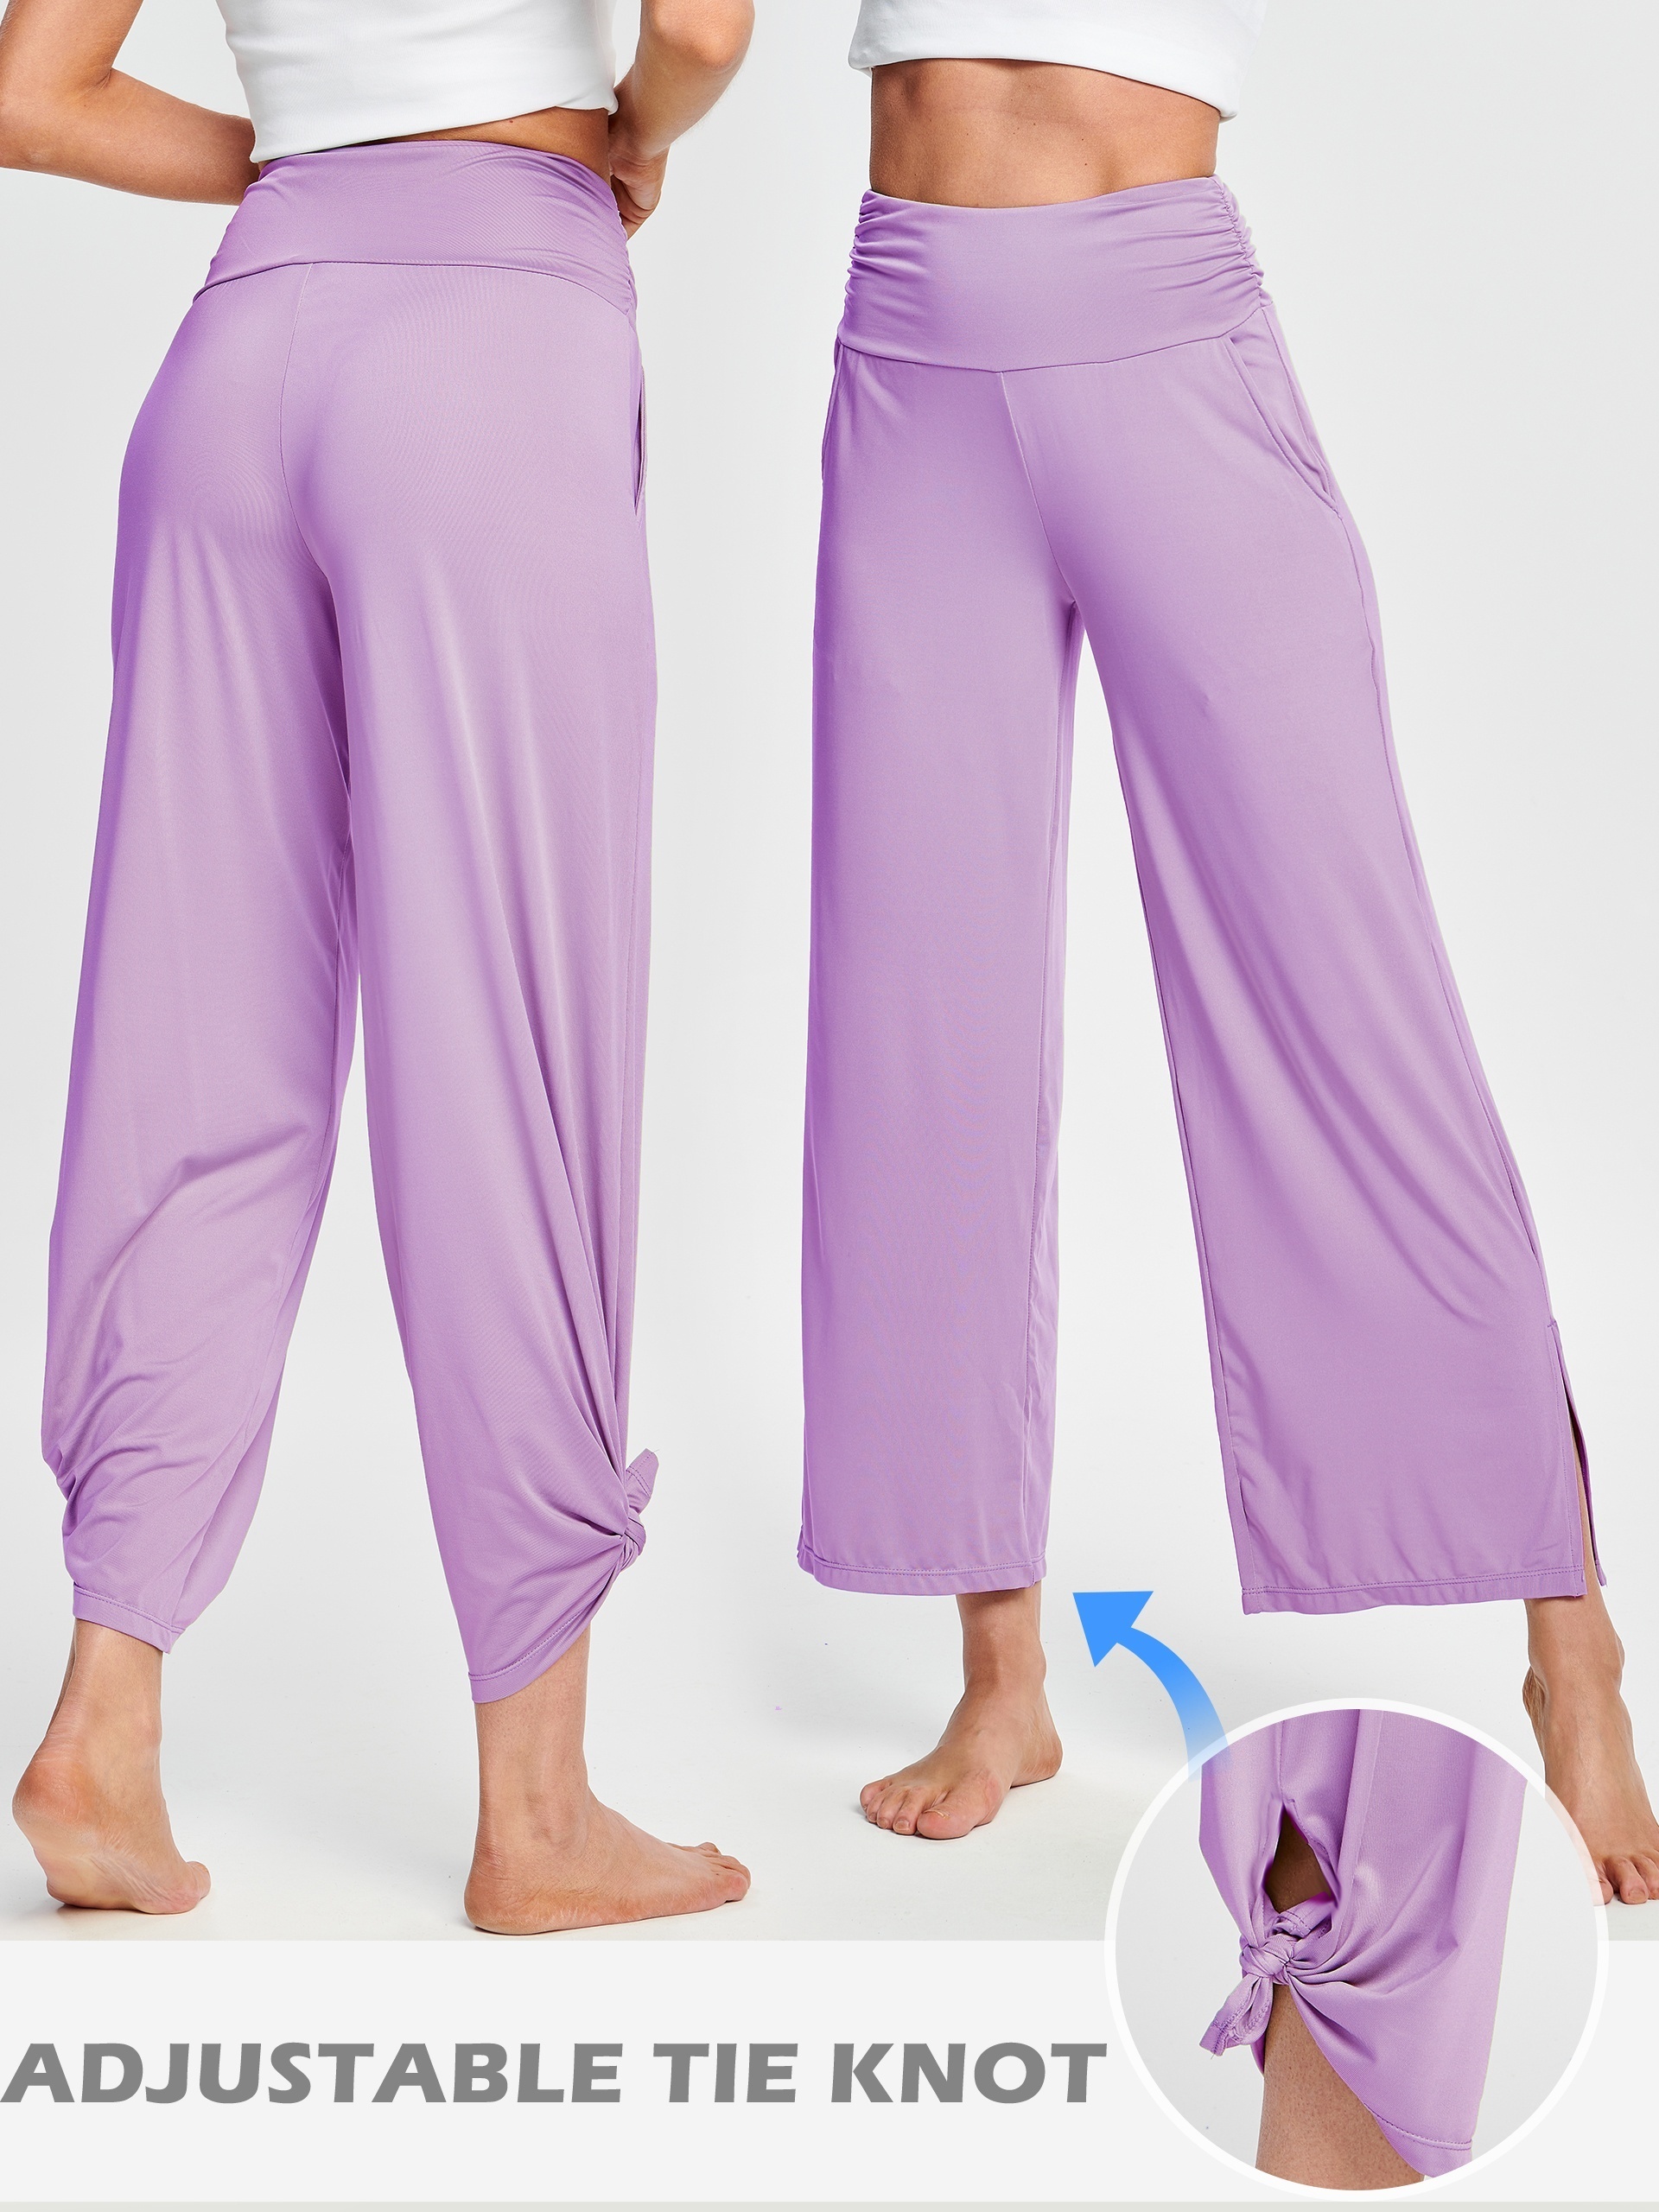 Pantalones deportivos para yoga activos, con bolsillos